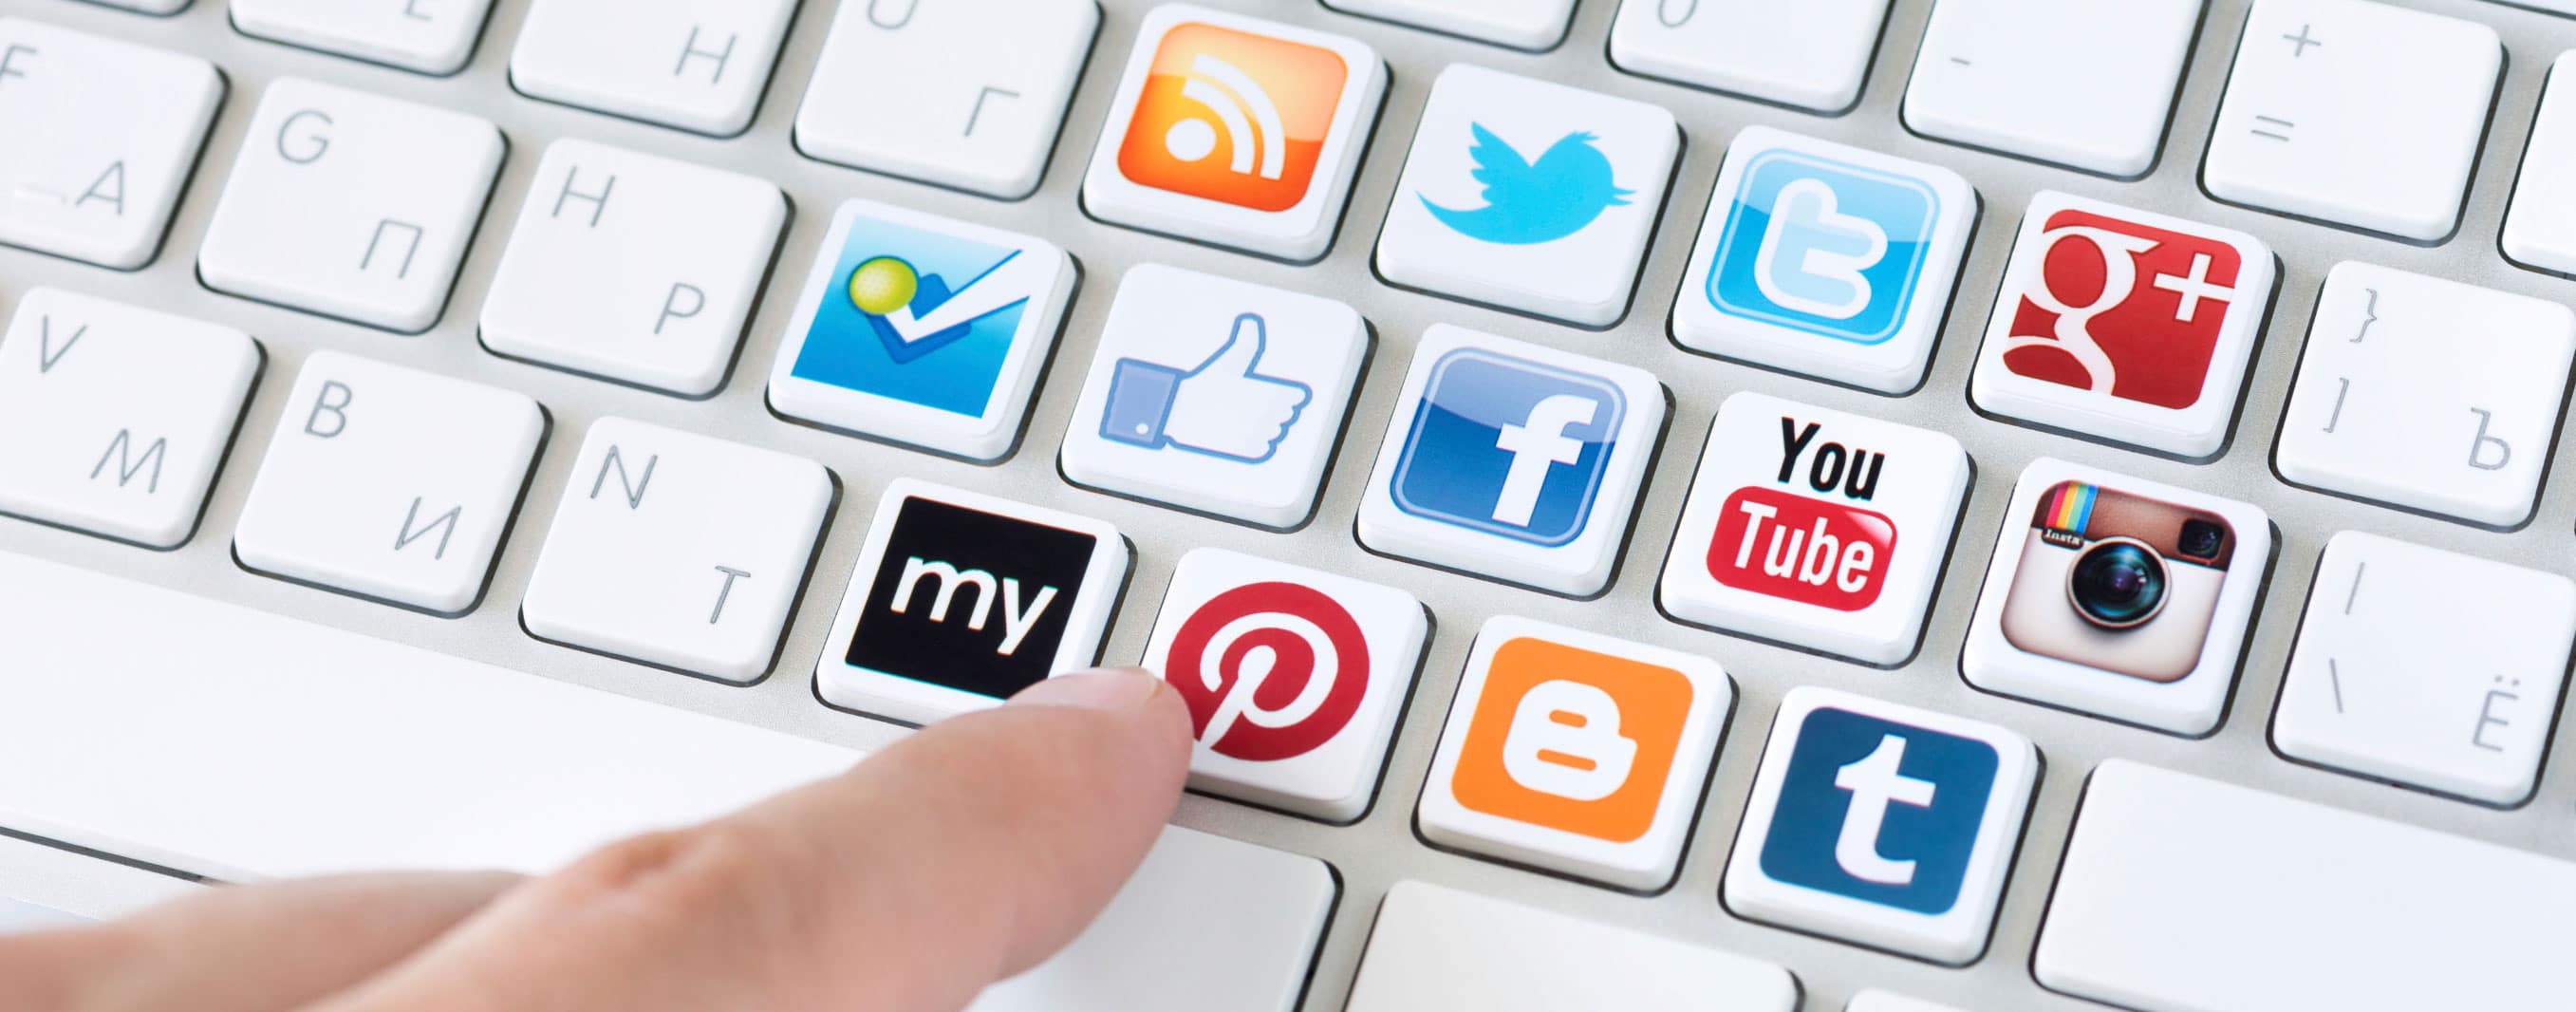 Social-media-Keyboard